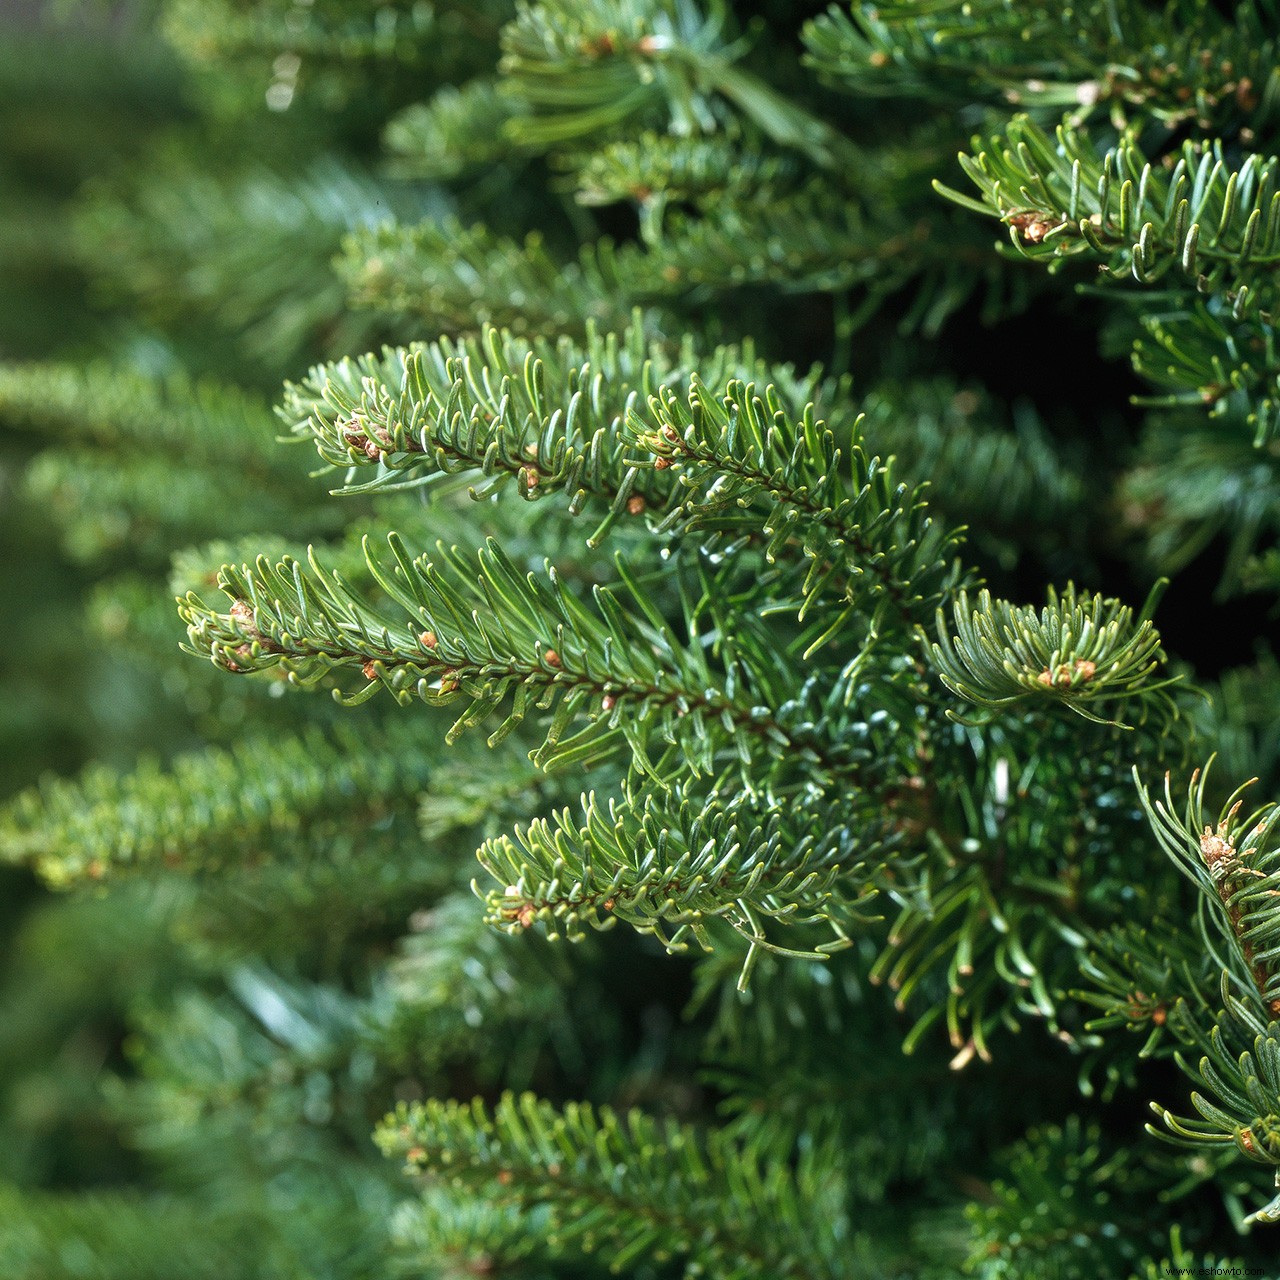 Los 7 mejores tipos de árboles de Navidad para decorar los pasillos este año 